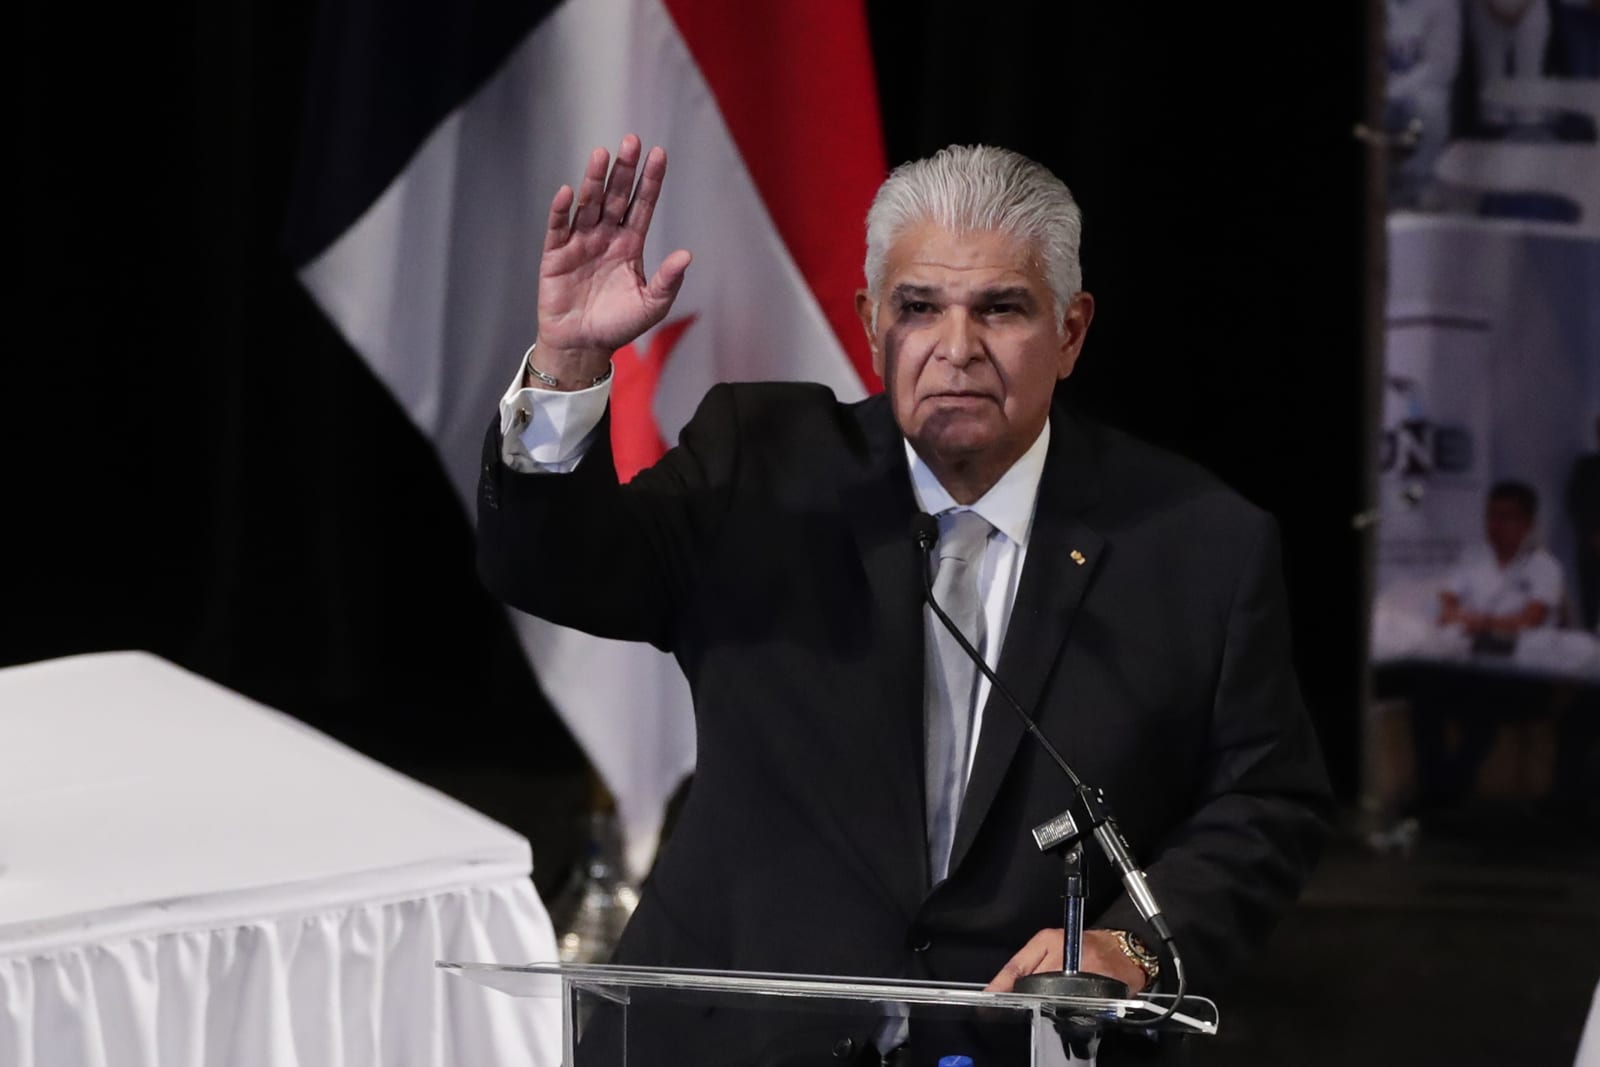 El presidente electo de Panamá repatriará a los migrantes que crucen el Darién